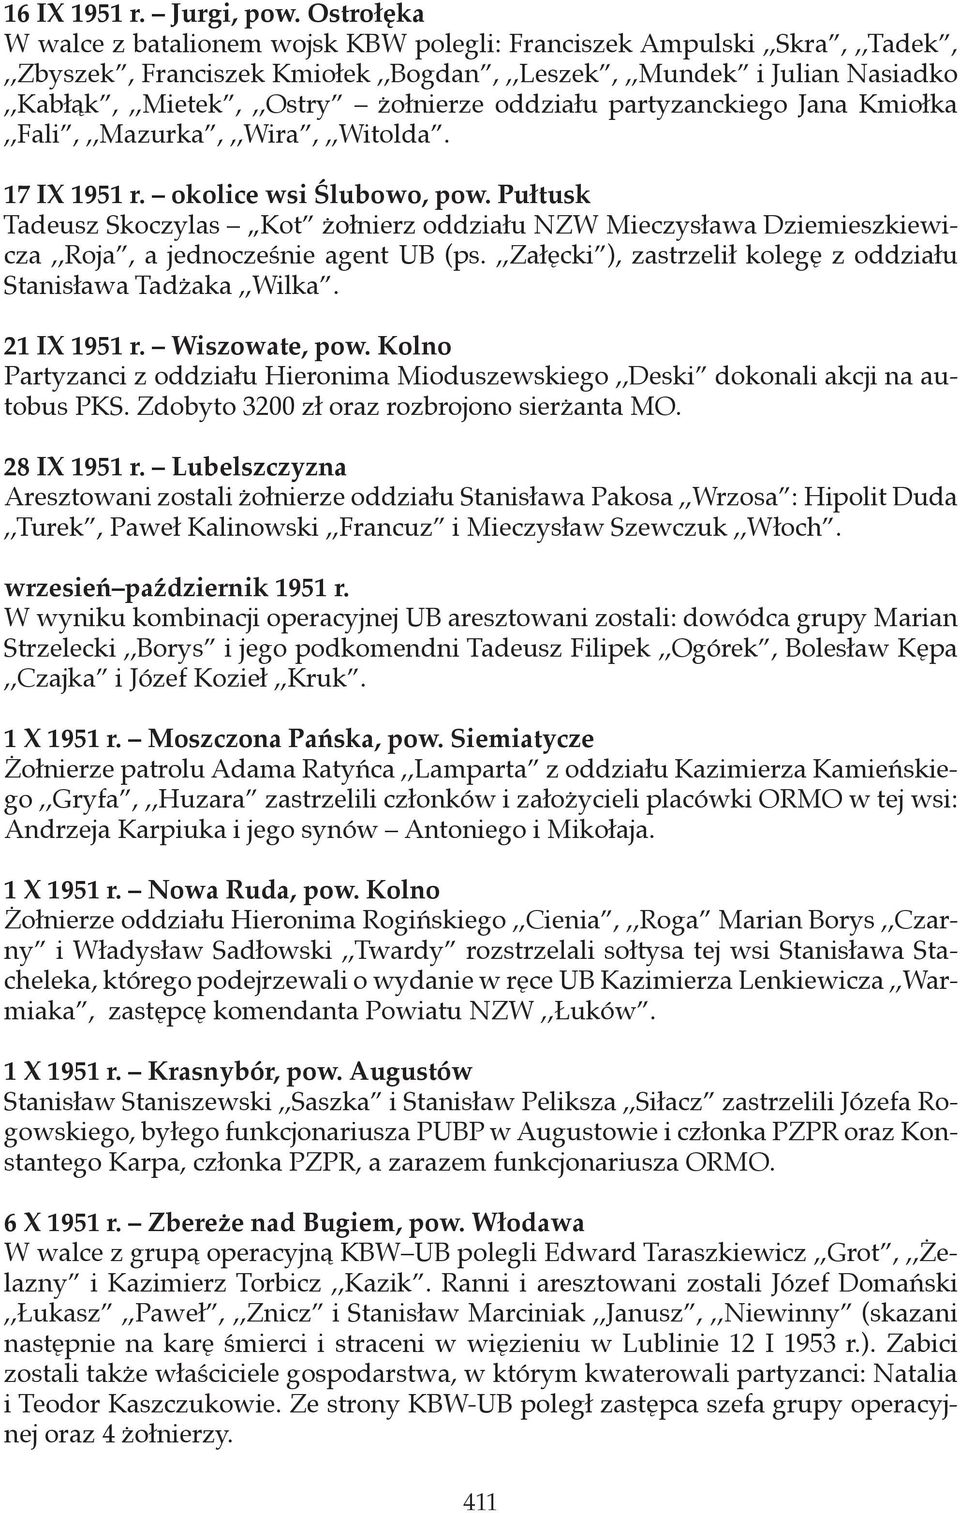 oddziału partyzanckiego Jana Kmiołka,,Fali,,,Mazurka,,,Wira,,,Witolda. 17 IX 1951 r. okolice wsi Ślubowo, pow.